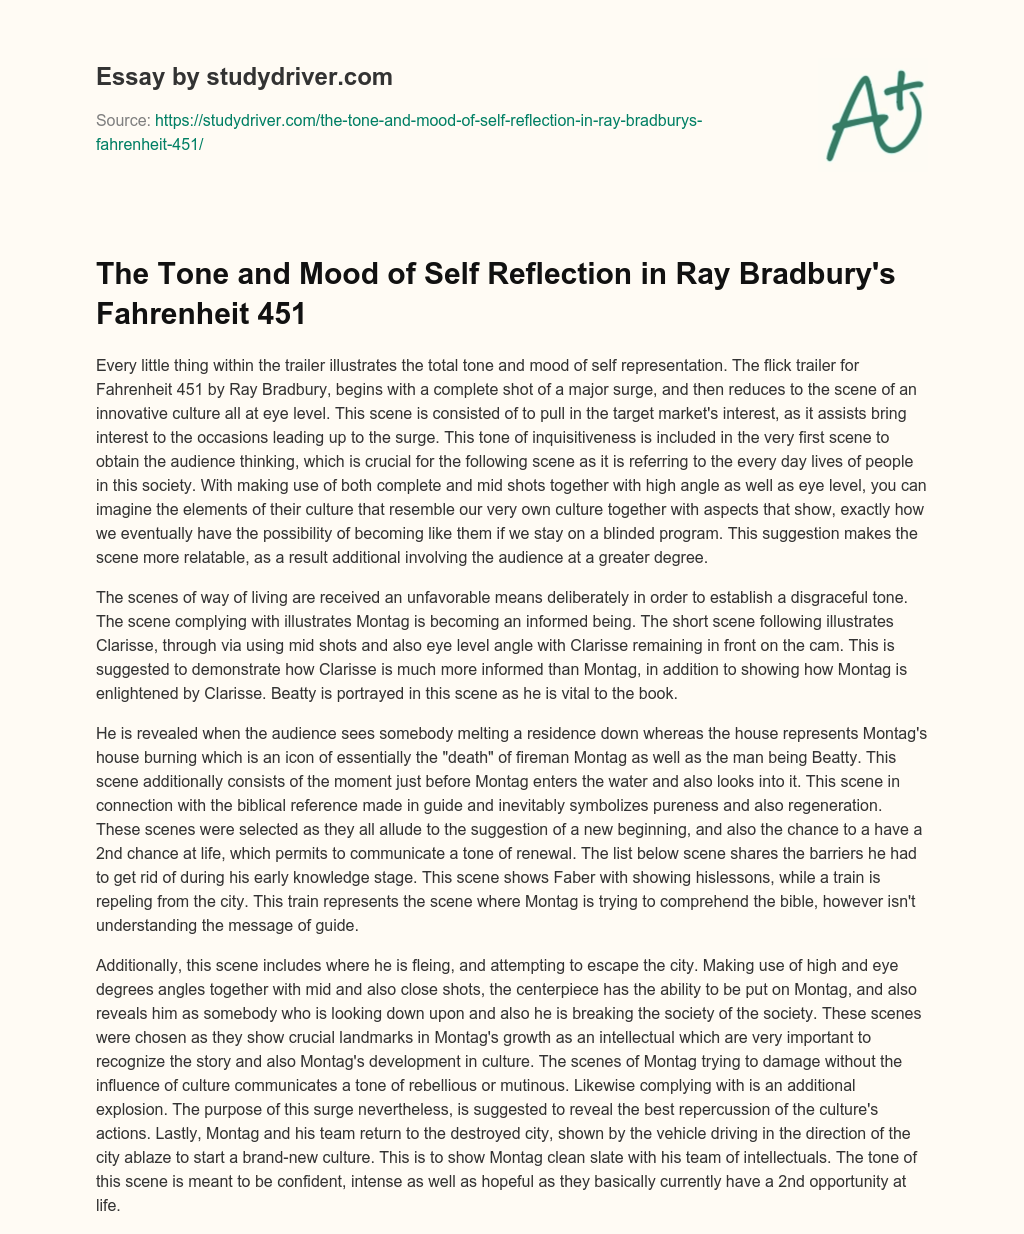 The Tone and Mood of Self Reflection in Ray Bradbury’s Fahrenheit 451 essay